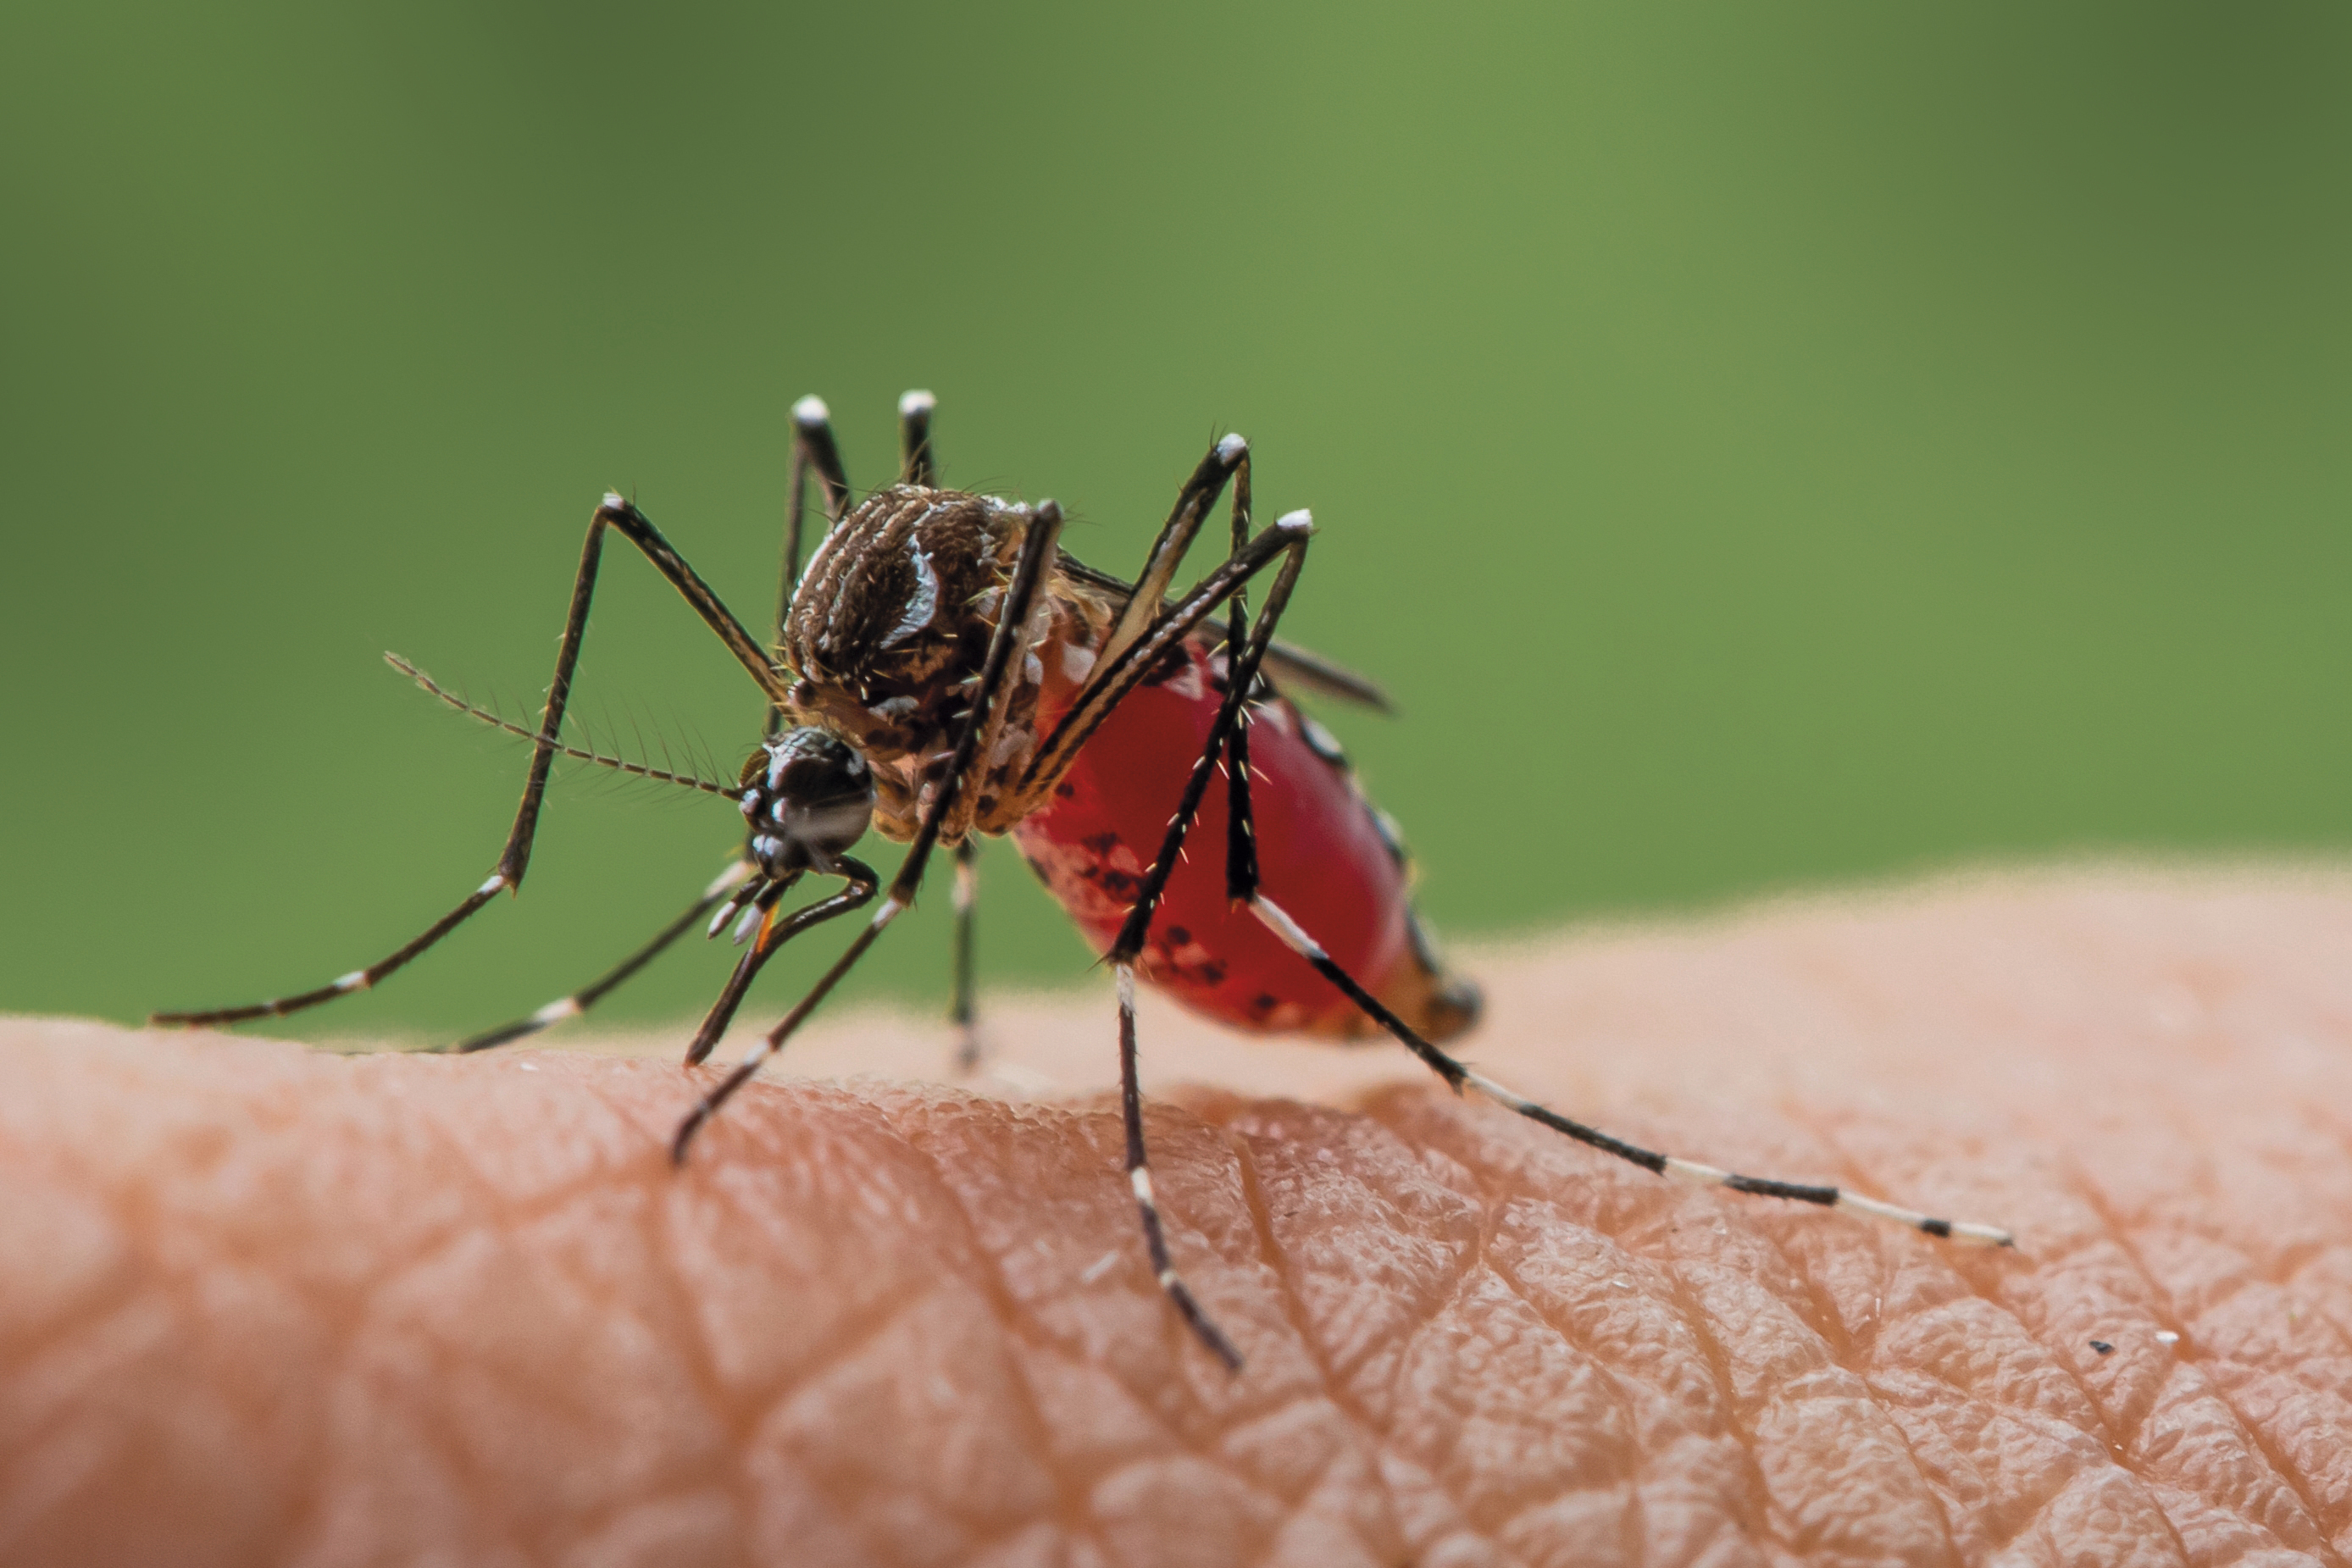 Un mosquito picando a una persona.